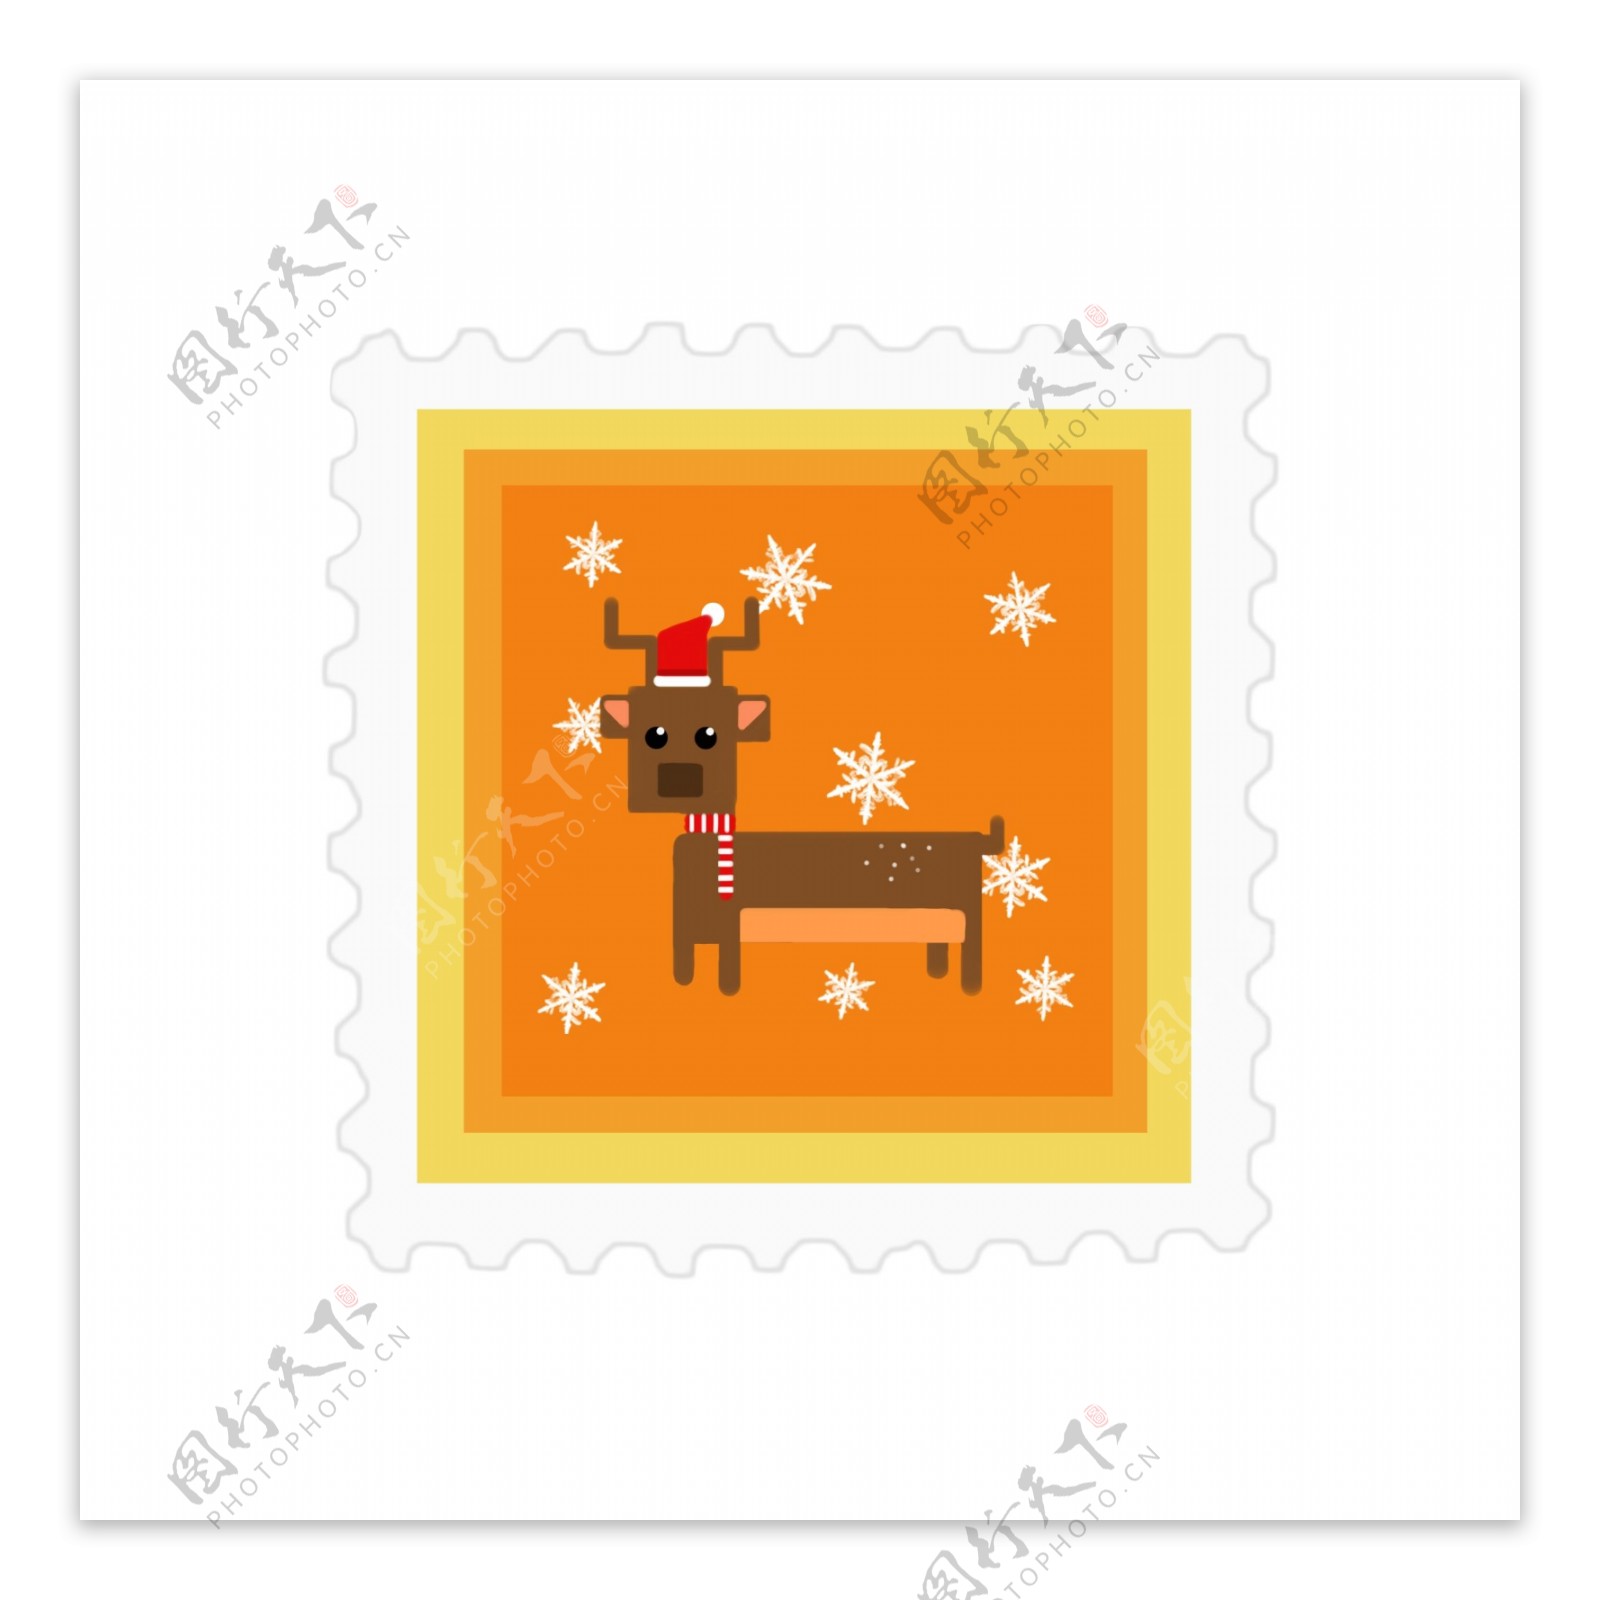 原创圣诞邮票贴纸黄色可爱元素